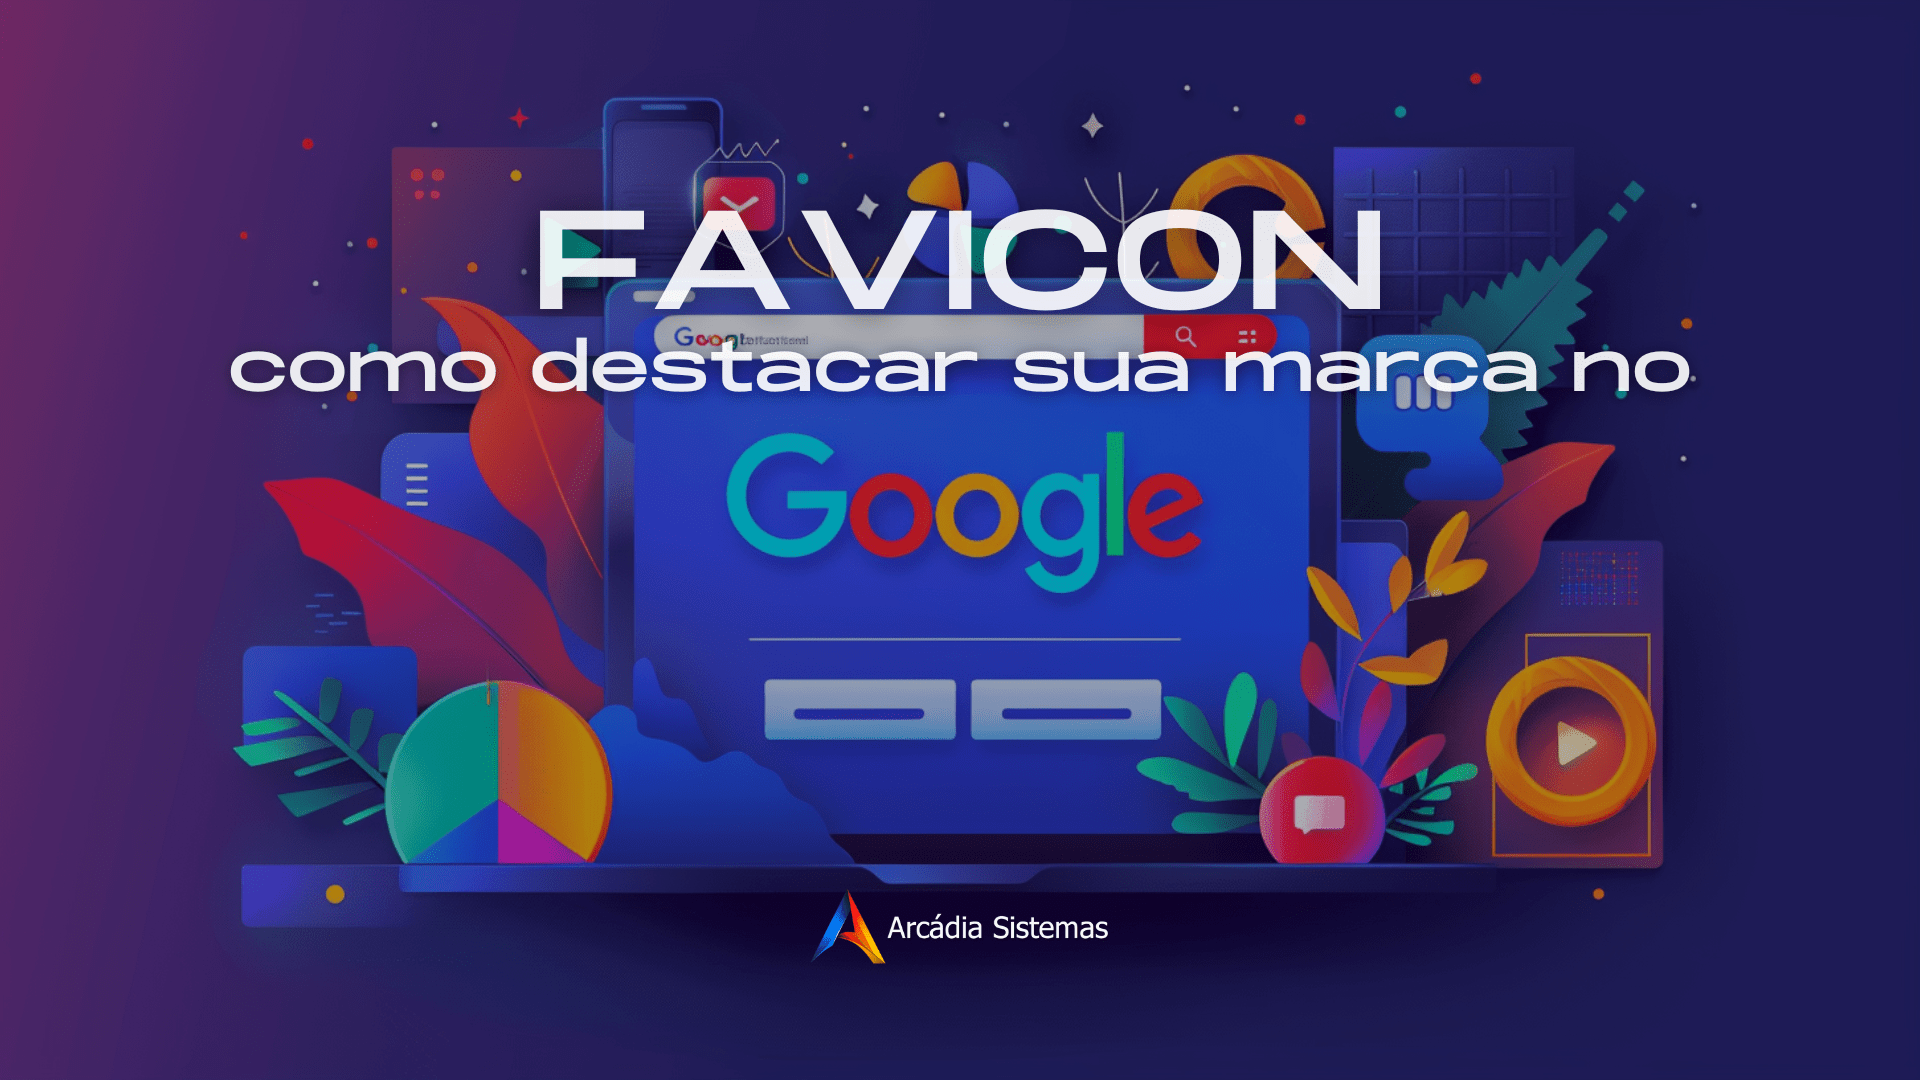 Favicon e Google